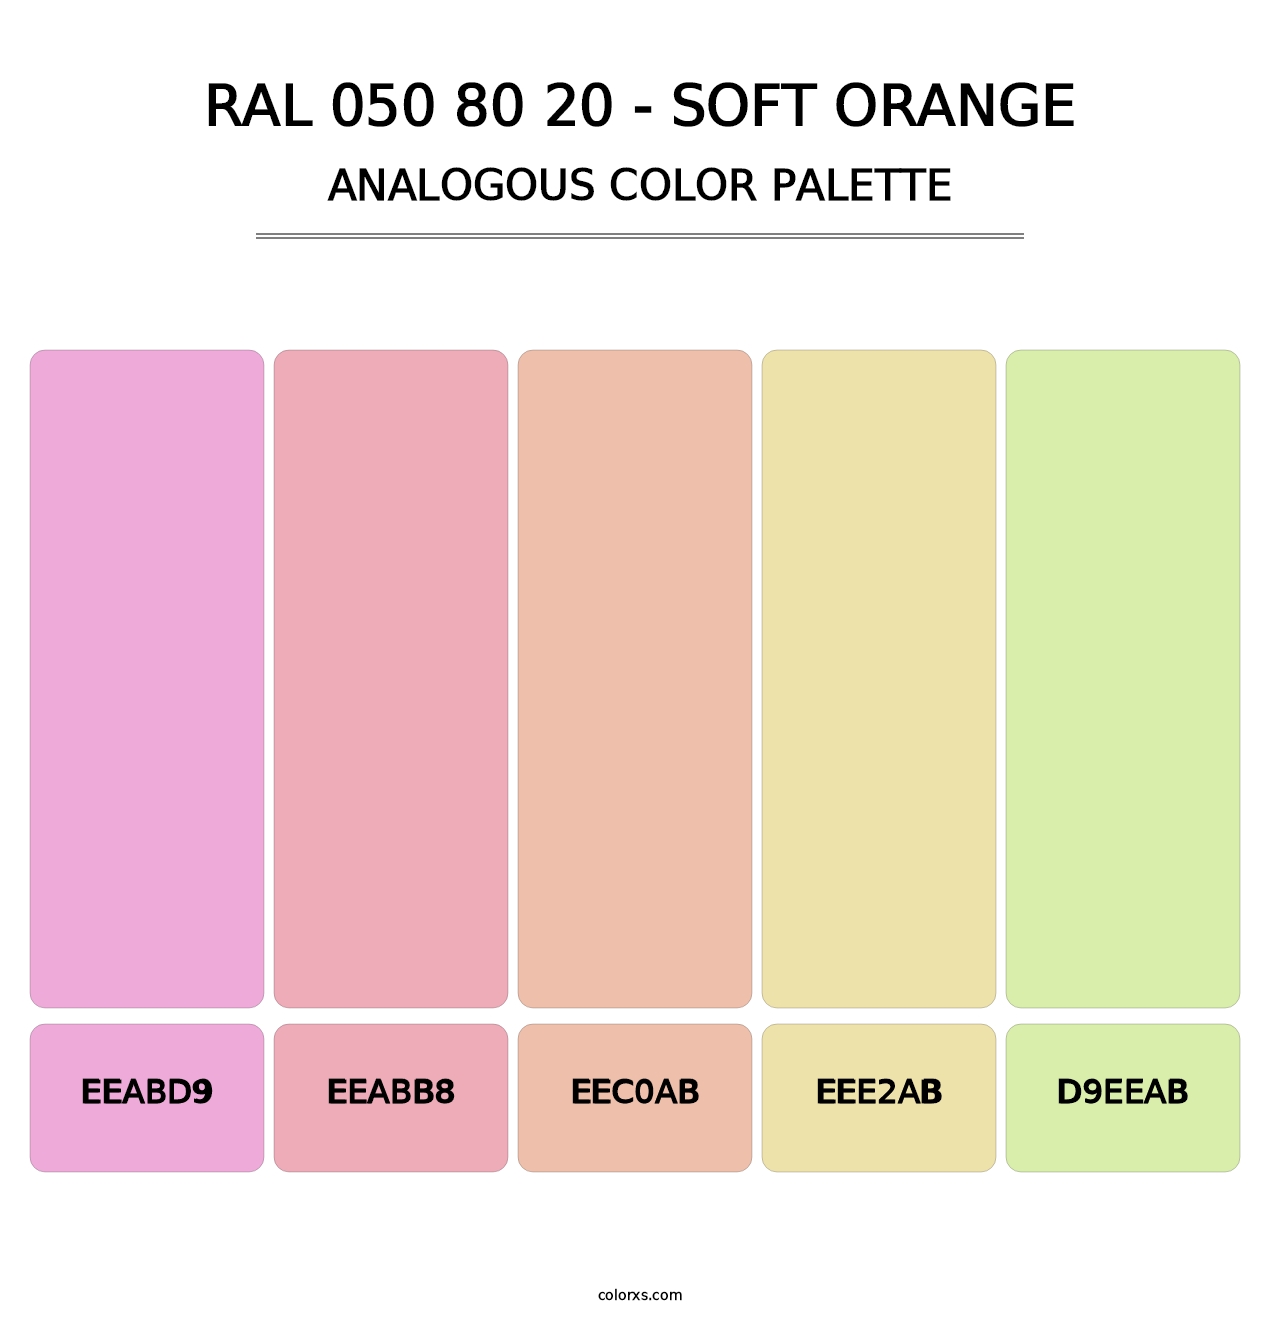 RAL 050 80 20 - Soft Orange - Analogous Color Palette